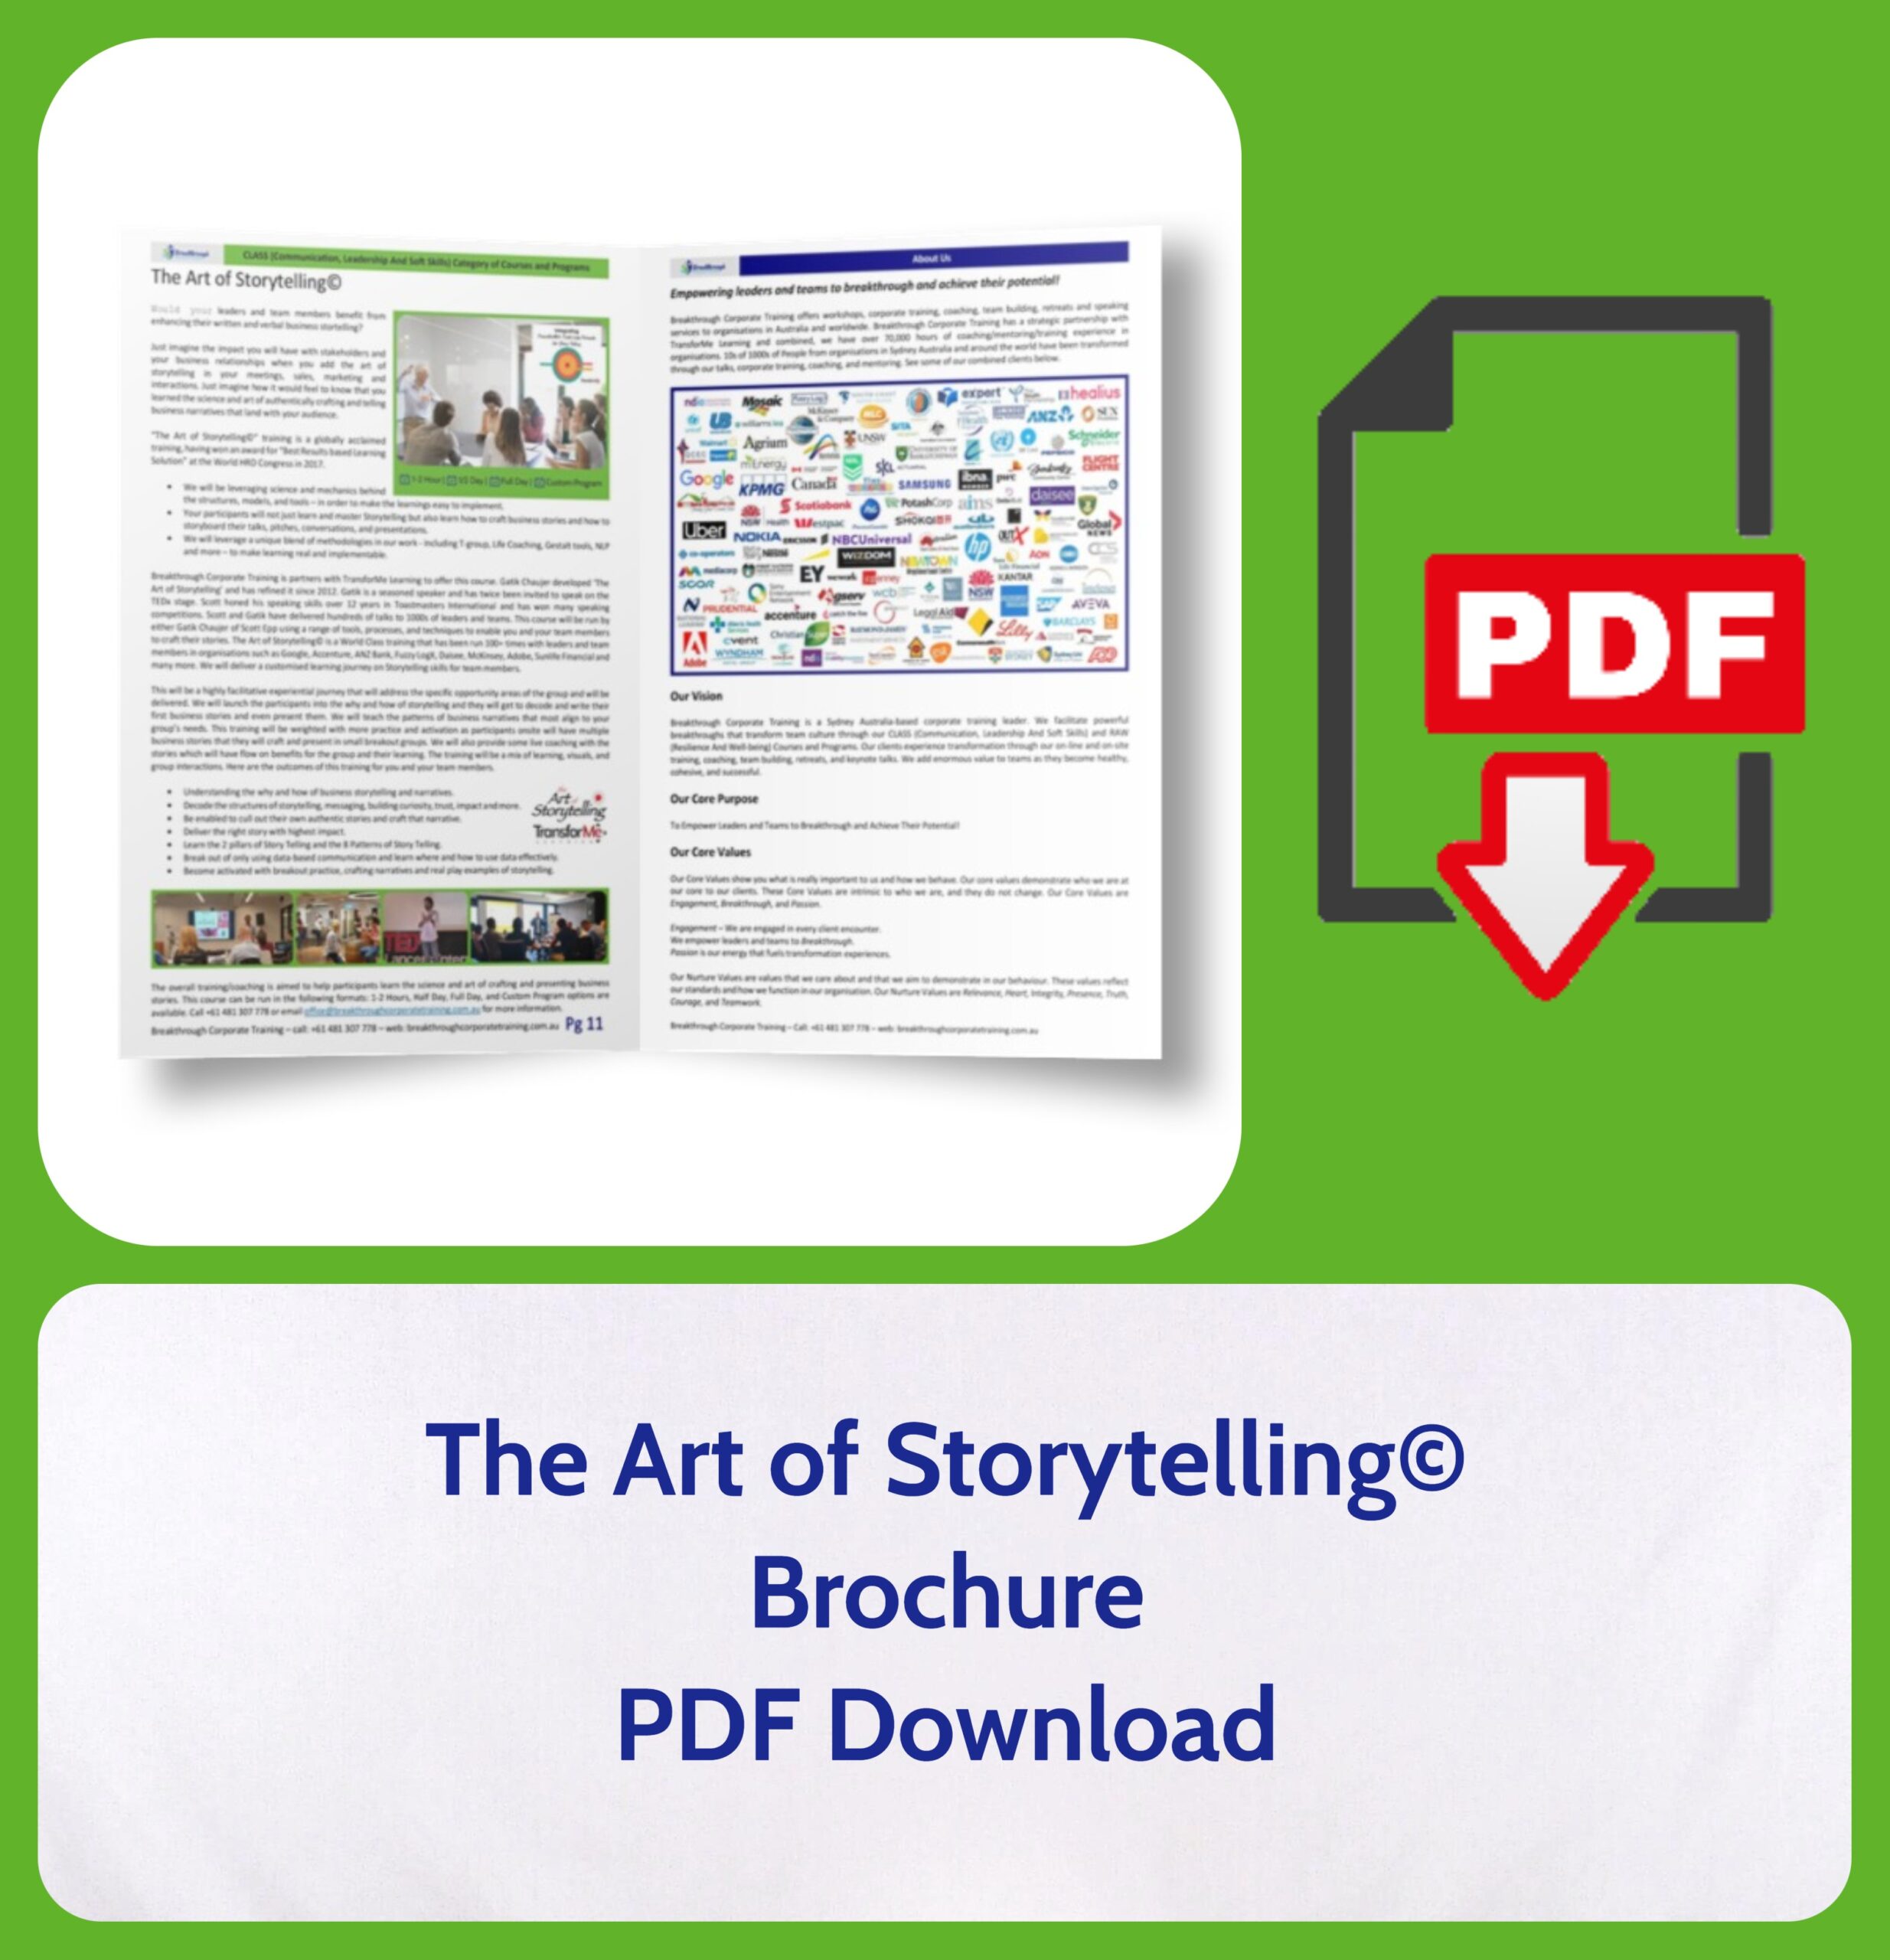 The Art of Storytelling© Brochure